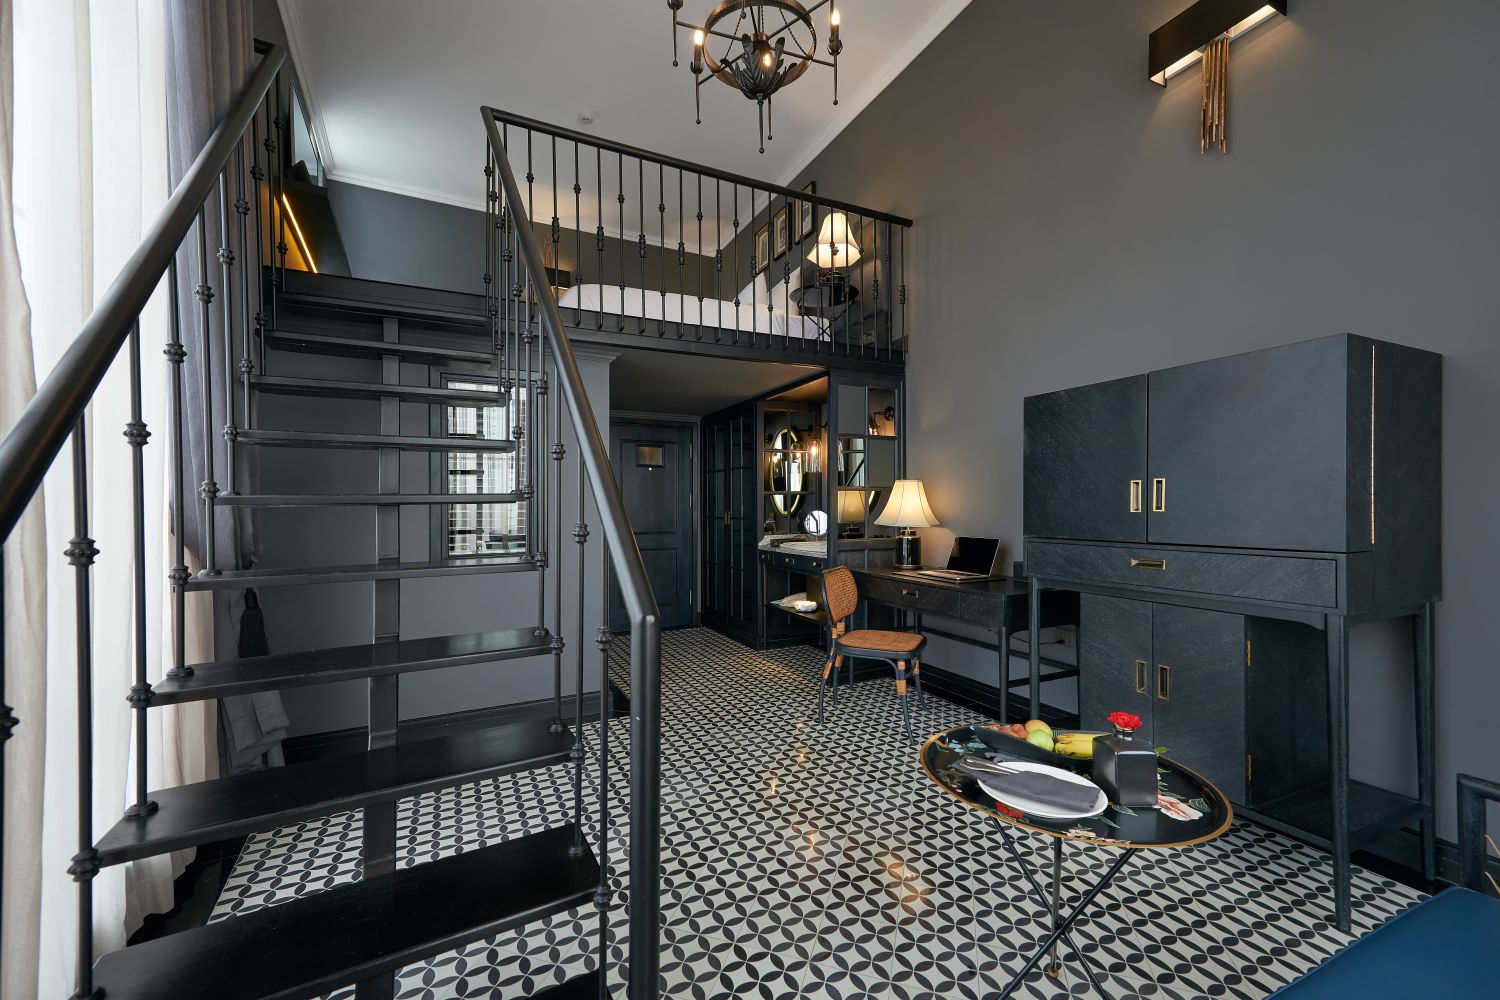 Hotel có 50 phòng các loại, đặc biệt nhất là phòng Duplex với 2 tầng nối nhau bằng cầu thang 1, ...